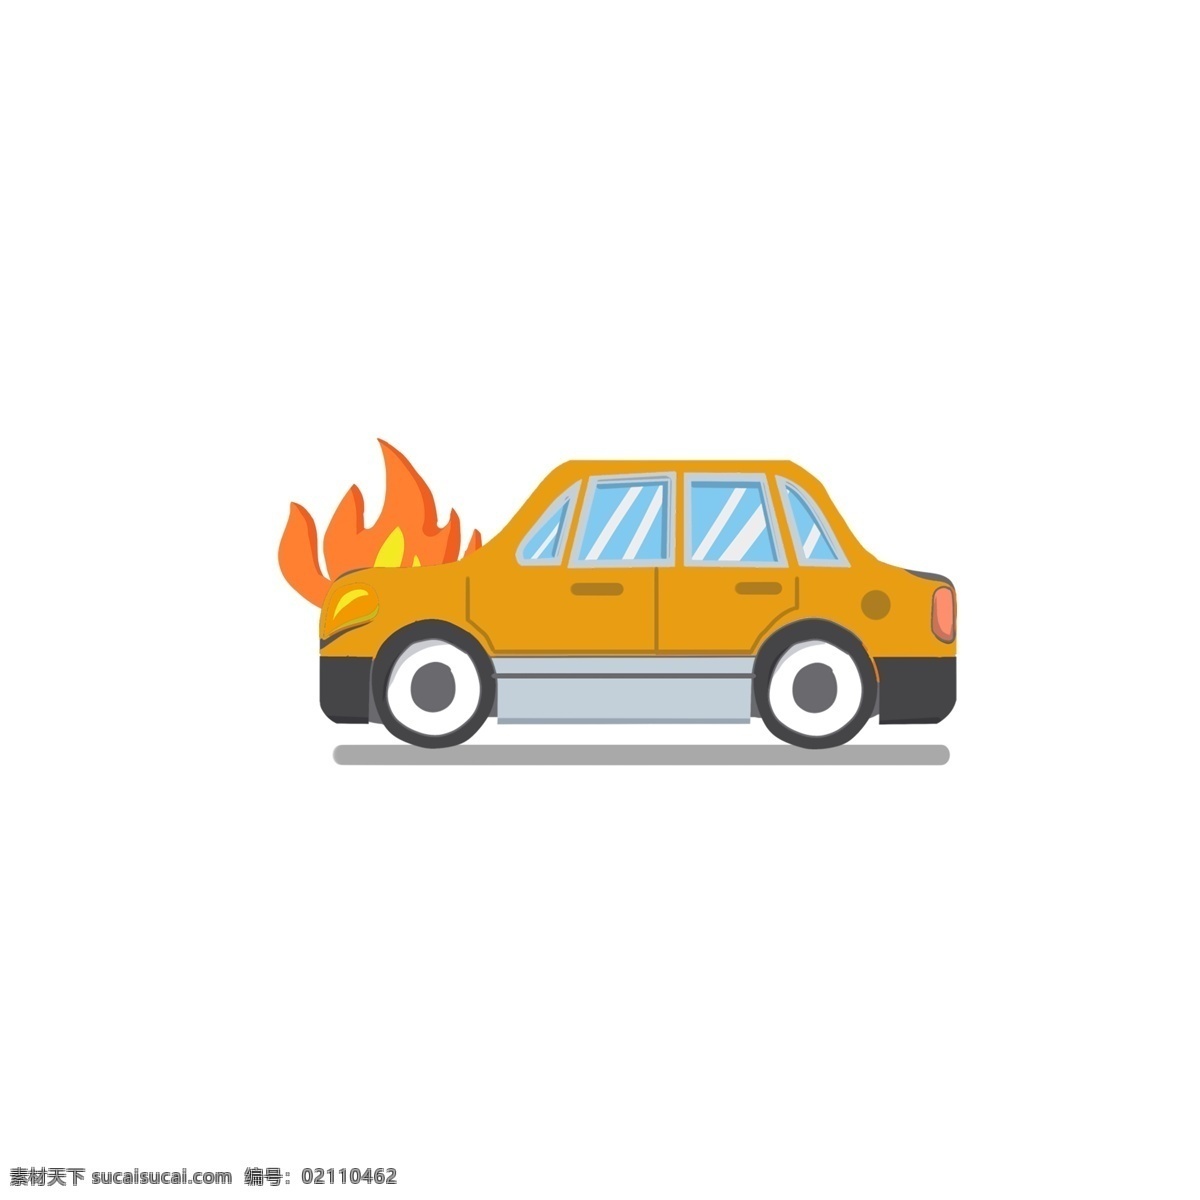 汽车 意外 遭遇 火灾 gif 动图 动态 卡通 小汽车 着火 安全第一 行驶 效果元素